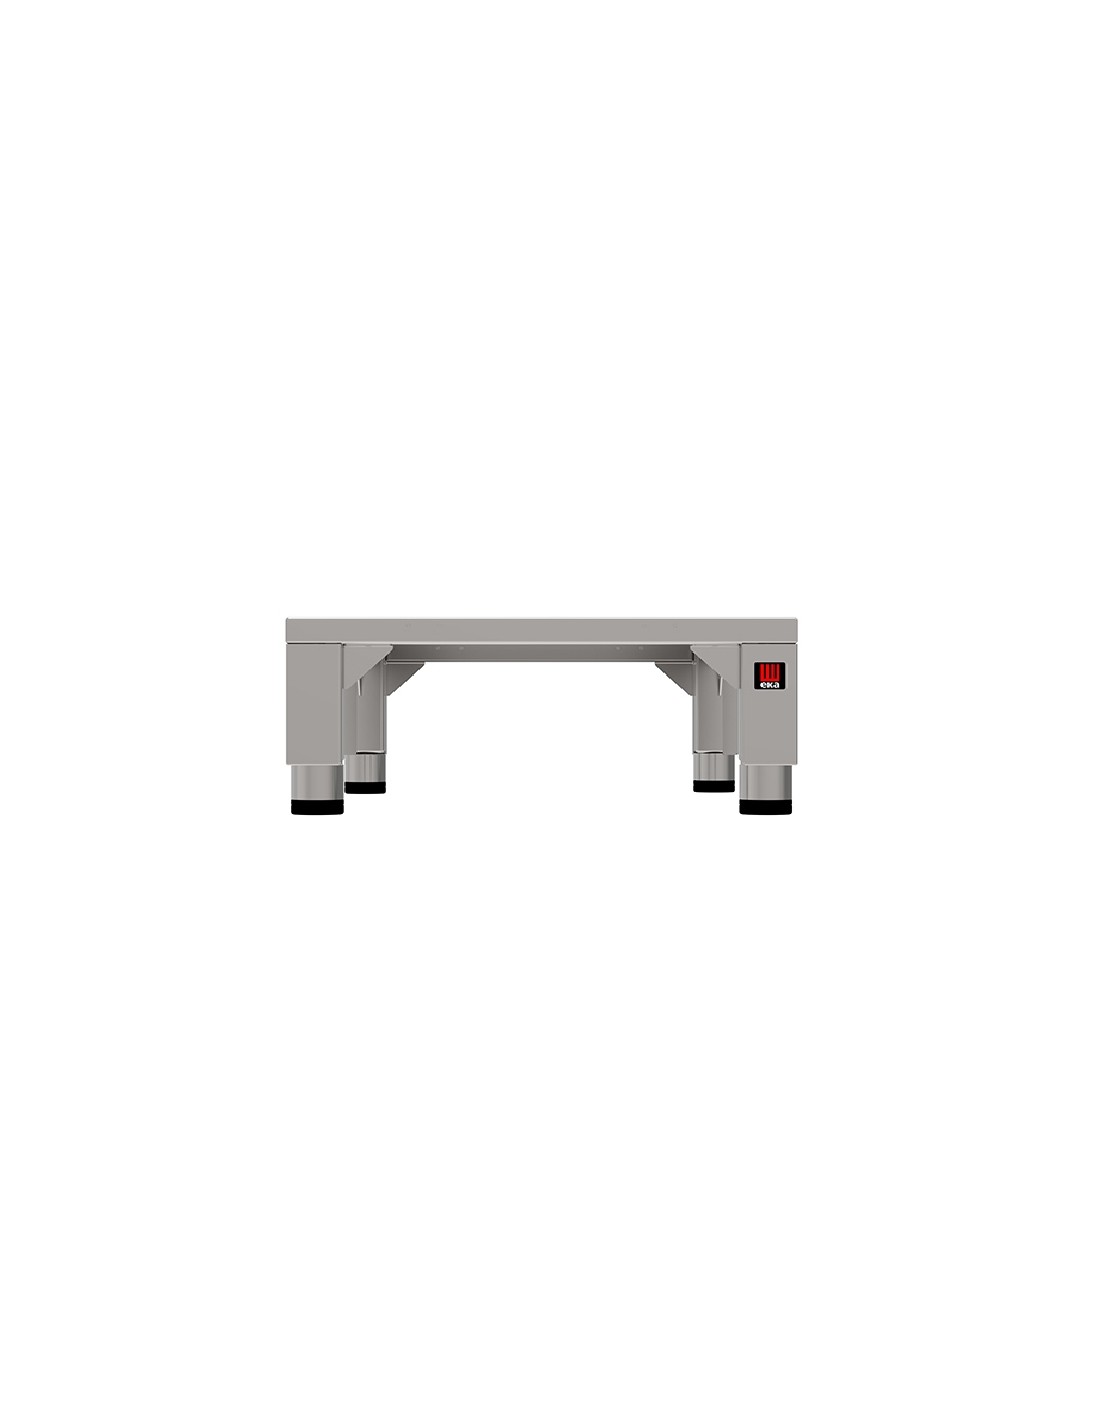 Mesa fija - Acciaio inox AISI 430 - Para hornos superpuestos - Dimensiones cm 50 x 55.6 x22h